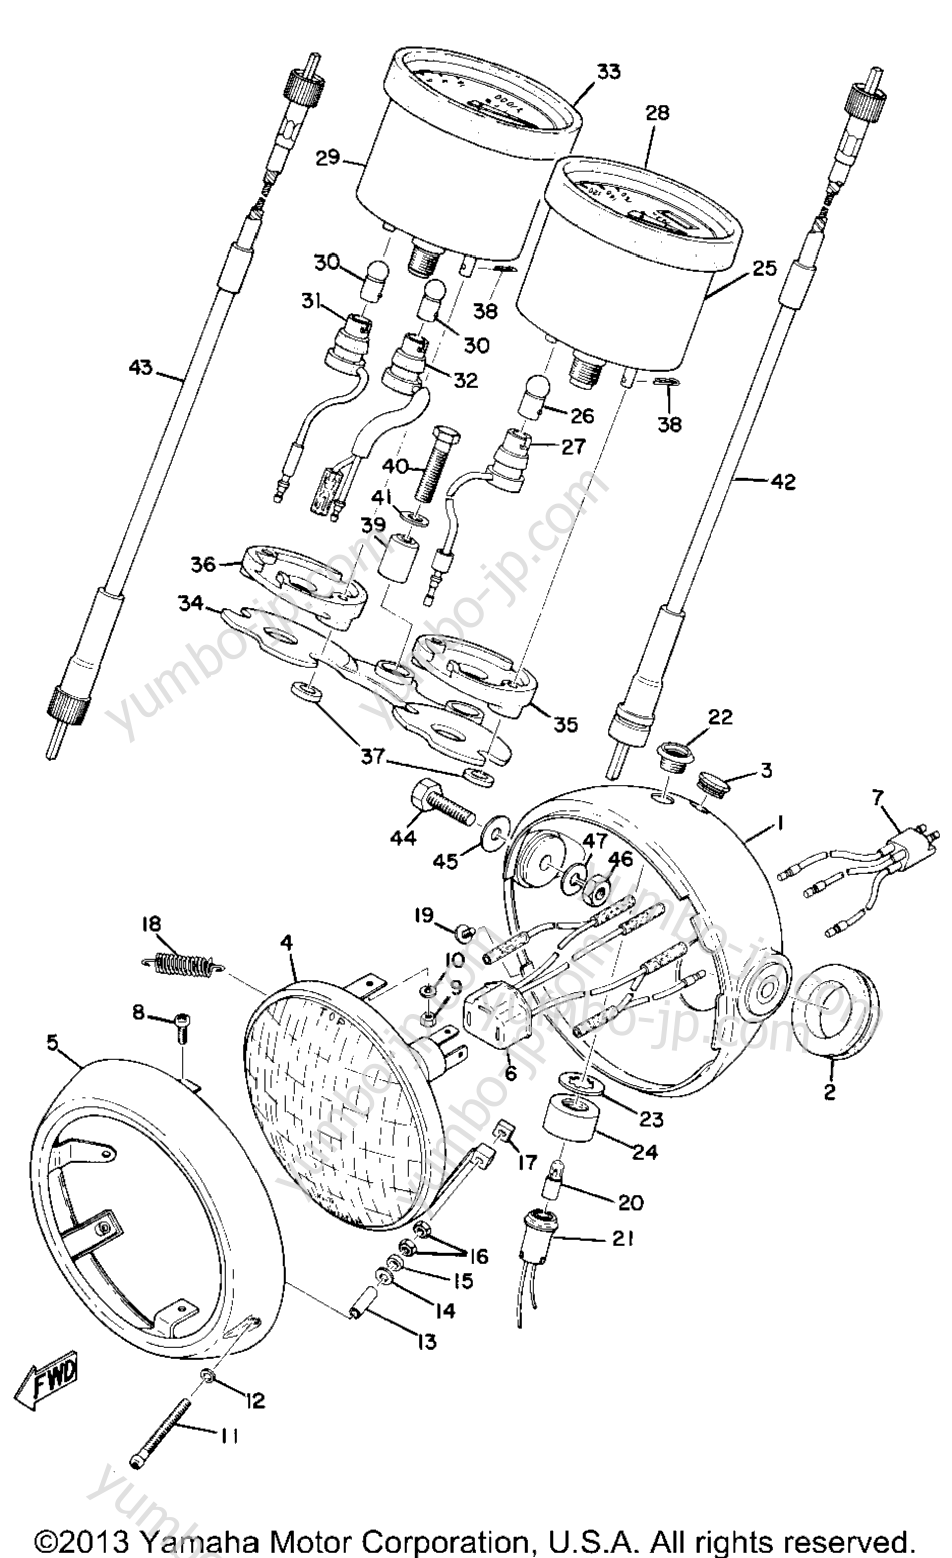 Head Lamp, Speedometer & Tachometer (Ct1 B) for motorcycles YAMAHA CT1B 1970 year